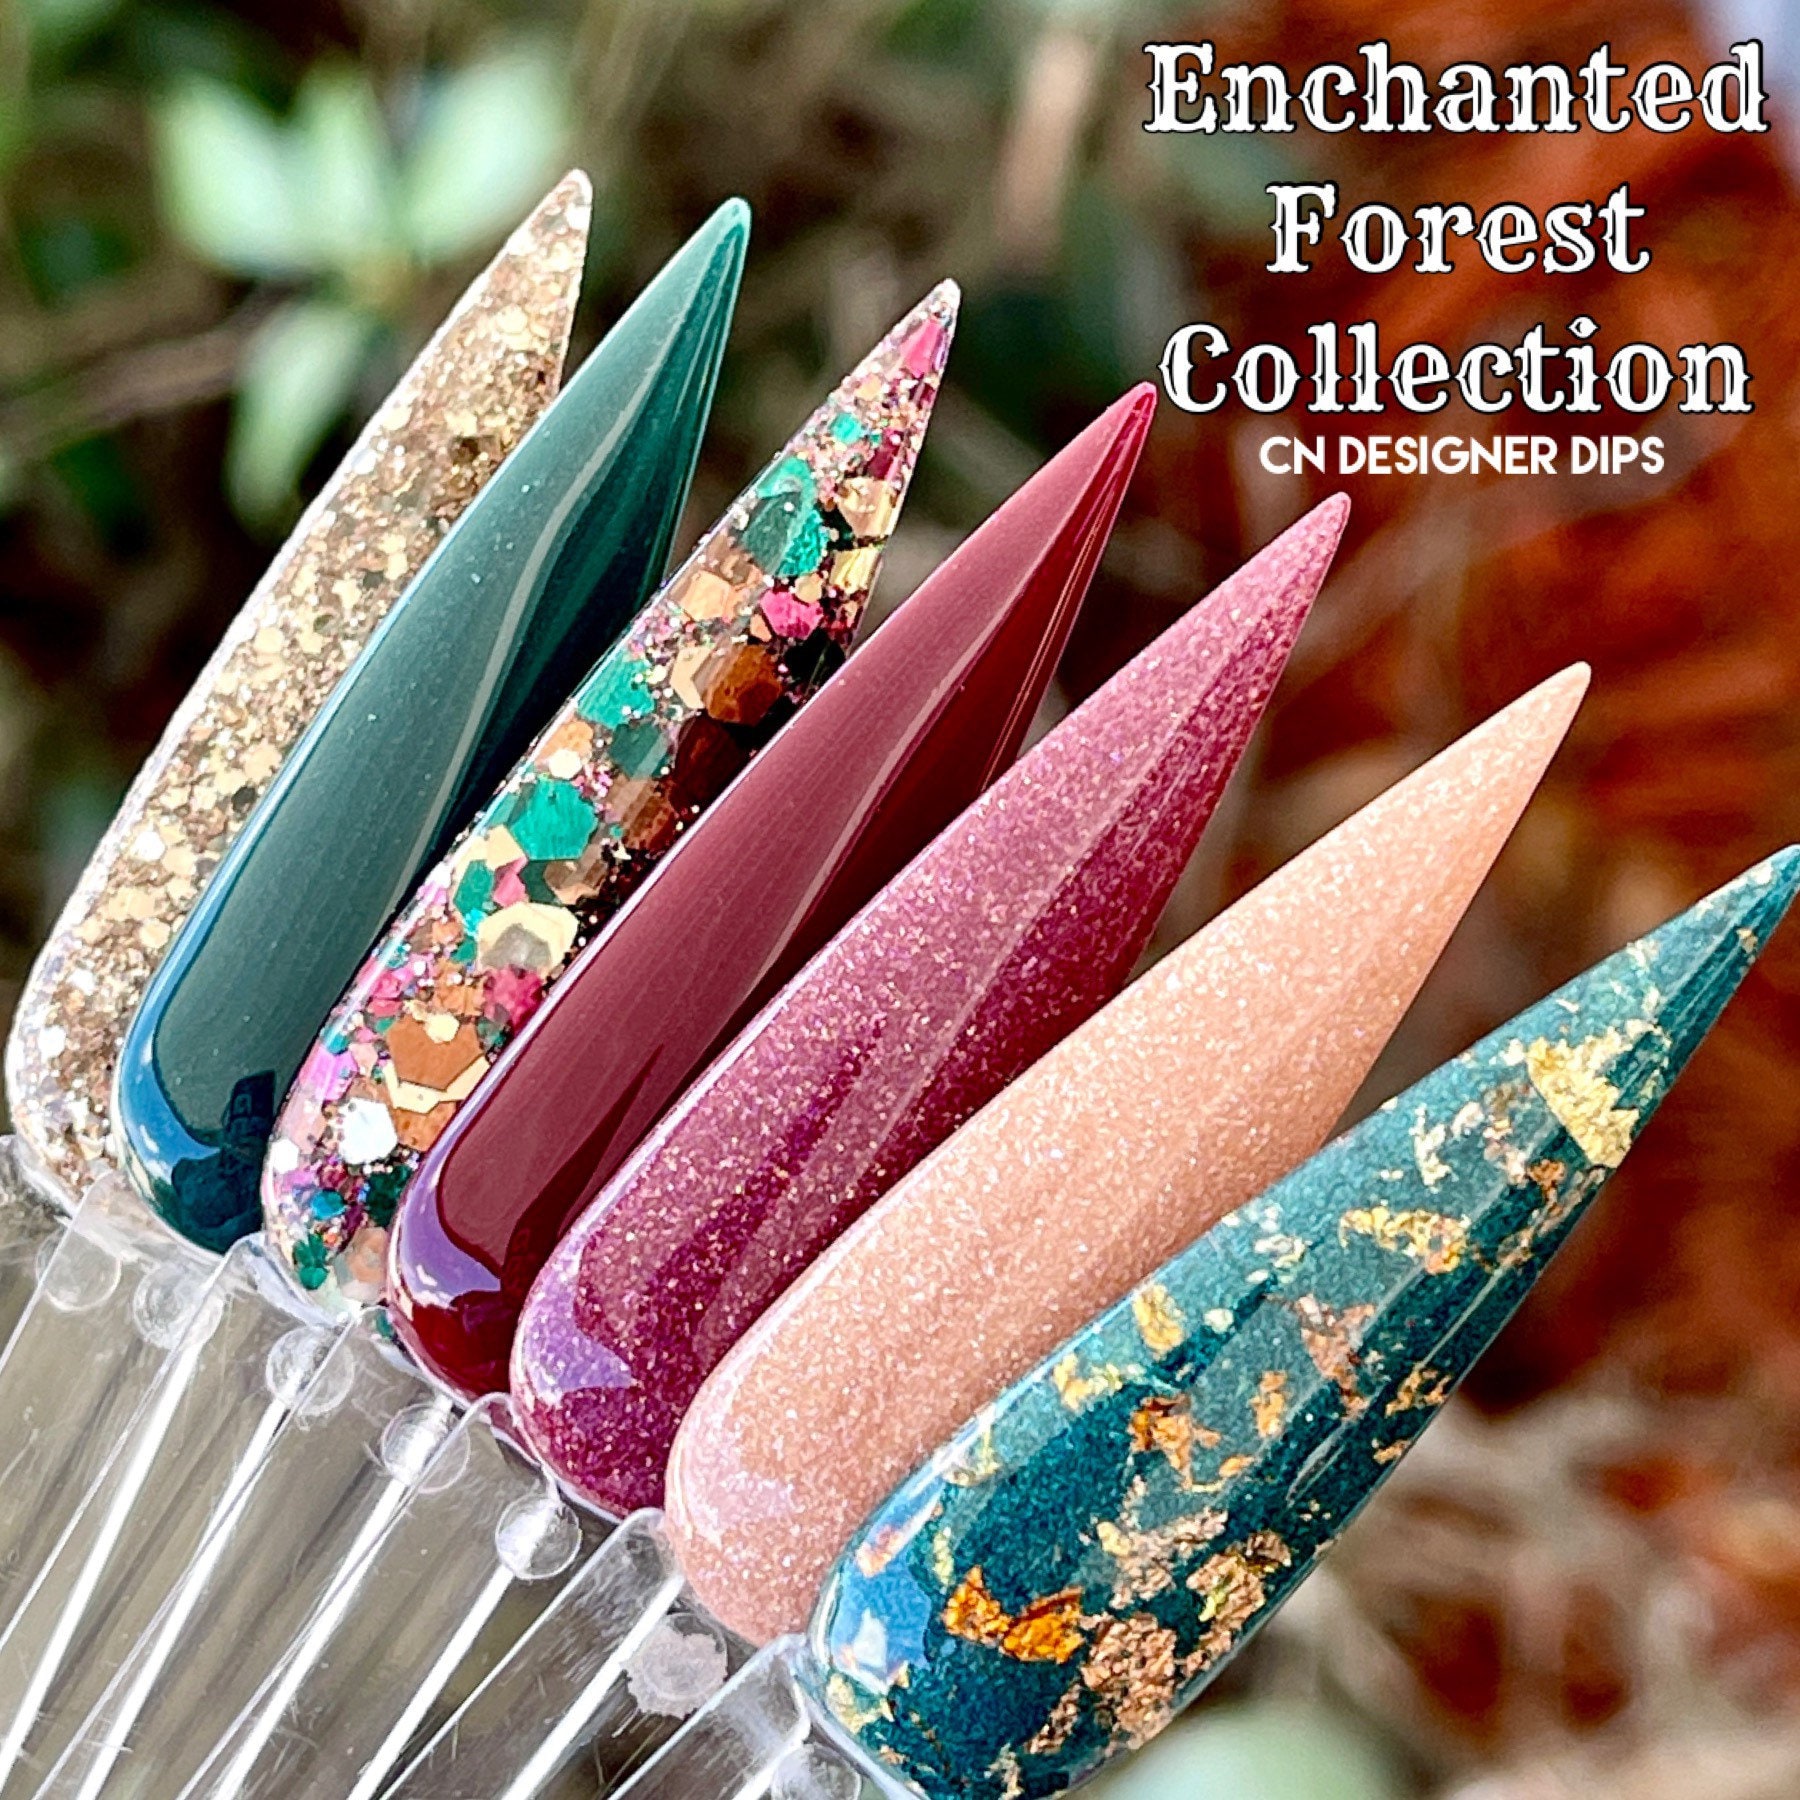 Enchanted Forest Collection - Dippulver, Dippulver Für Nägel, Nagel Dip, Dip Nailpulver, Glitzer Acryl von CNDesignerDips